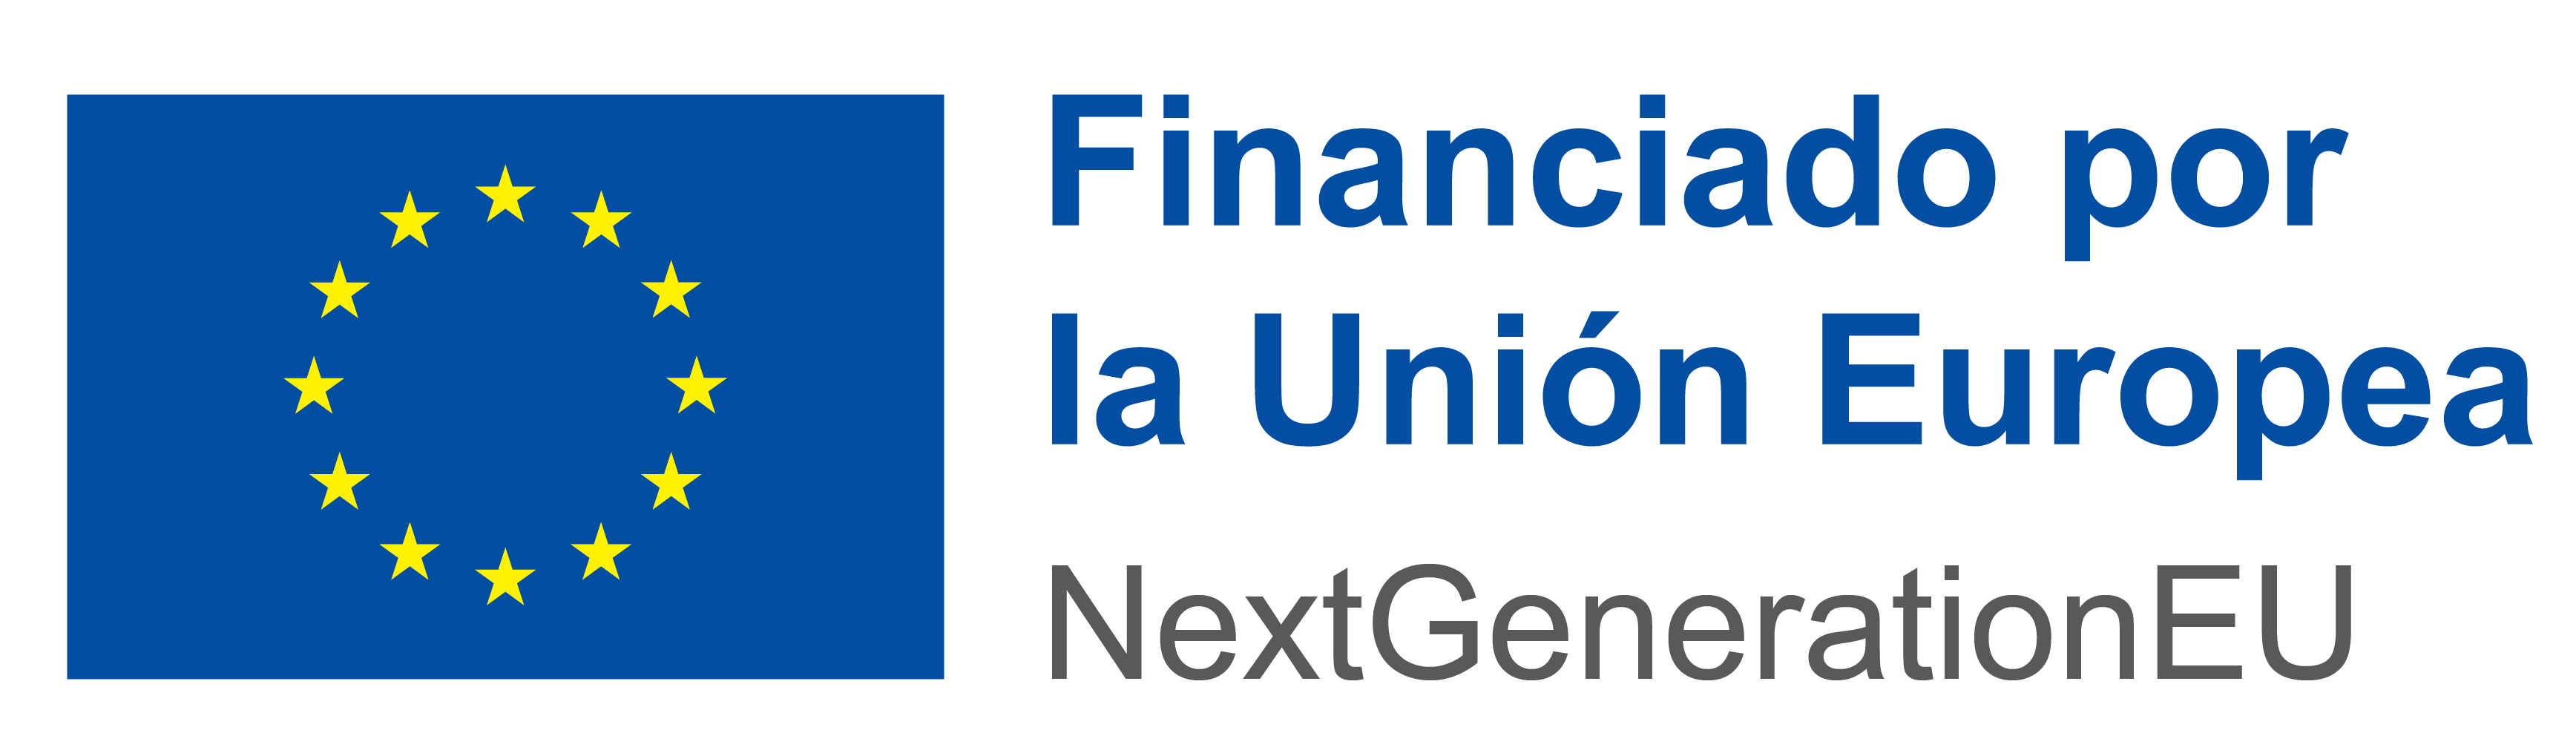 Financiado por  la Unión Europea-Next Generation EU